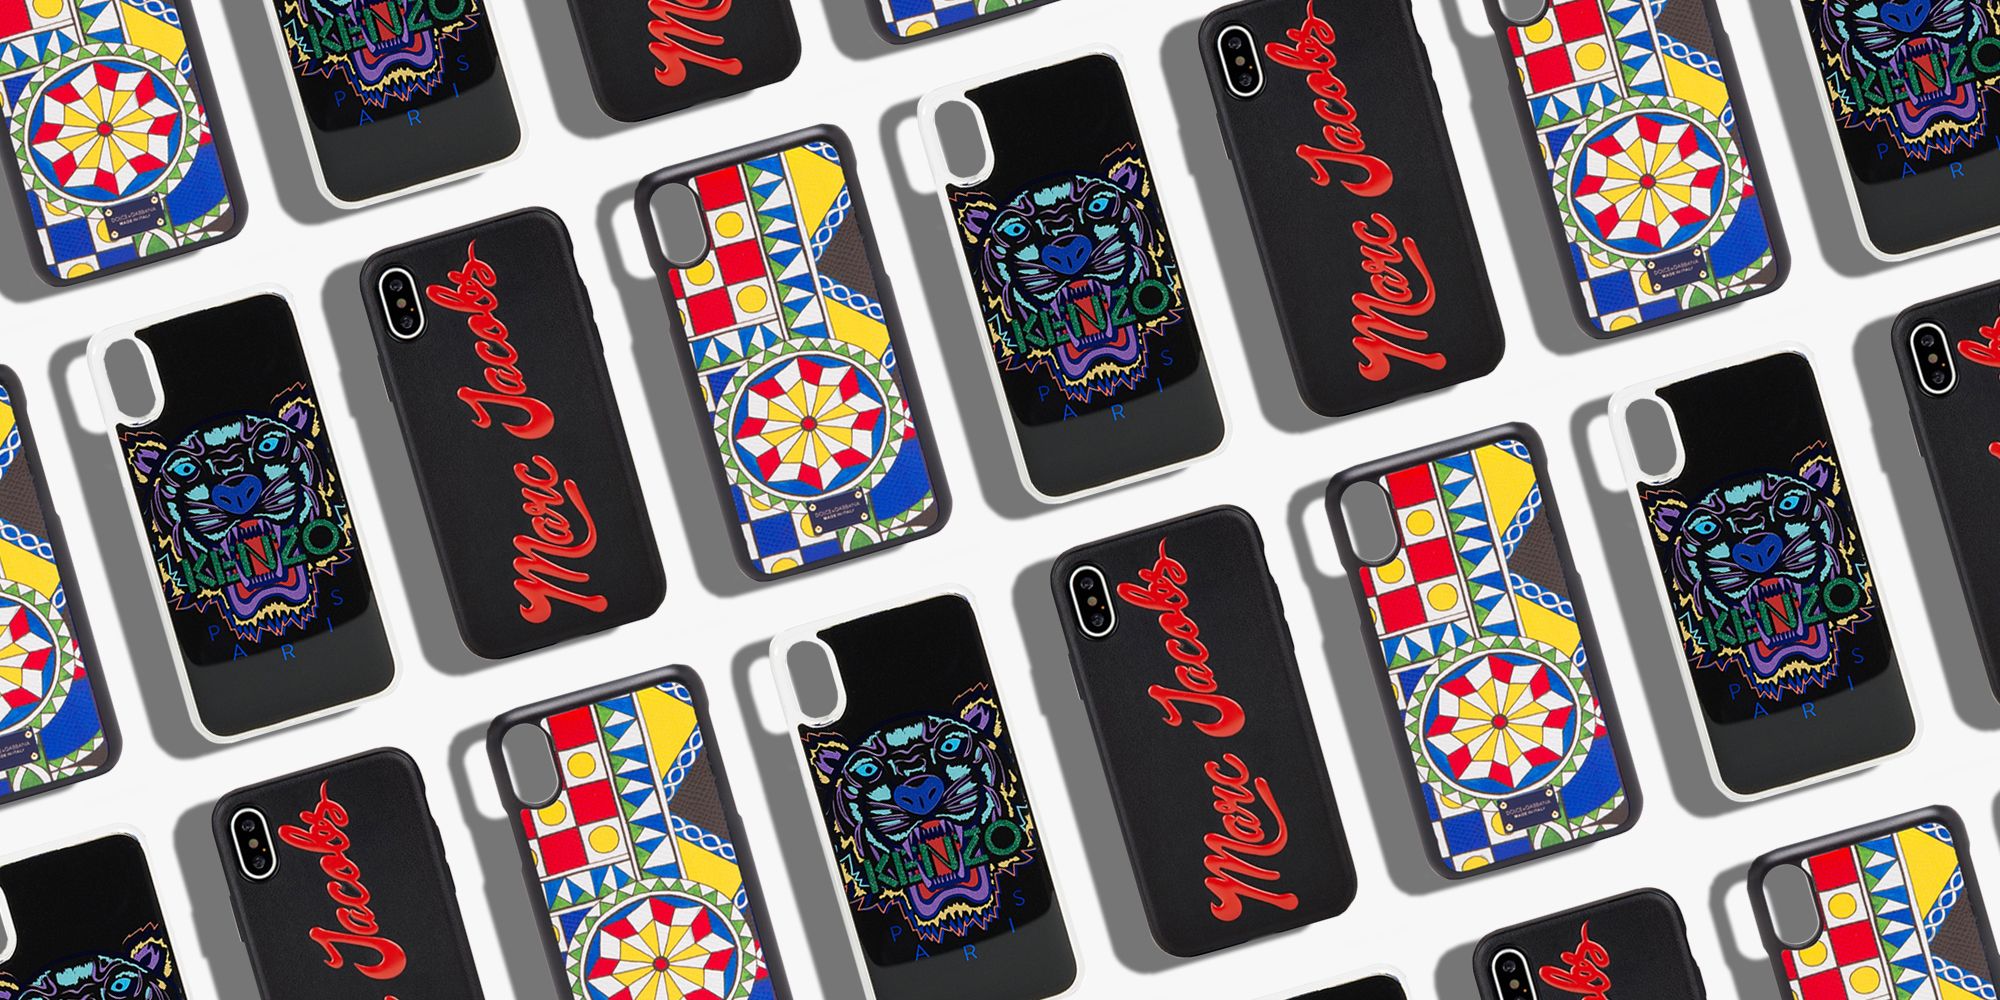 designer iphone cases